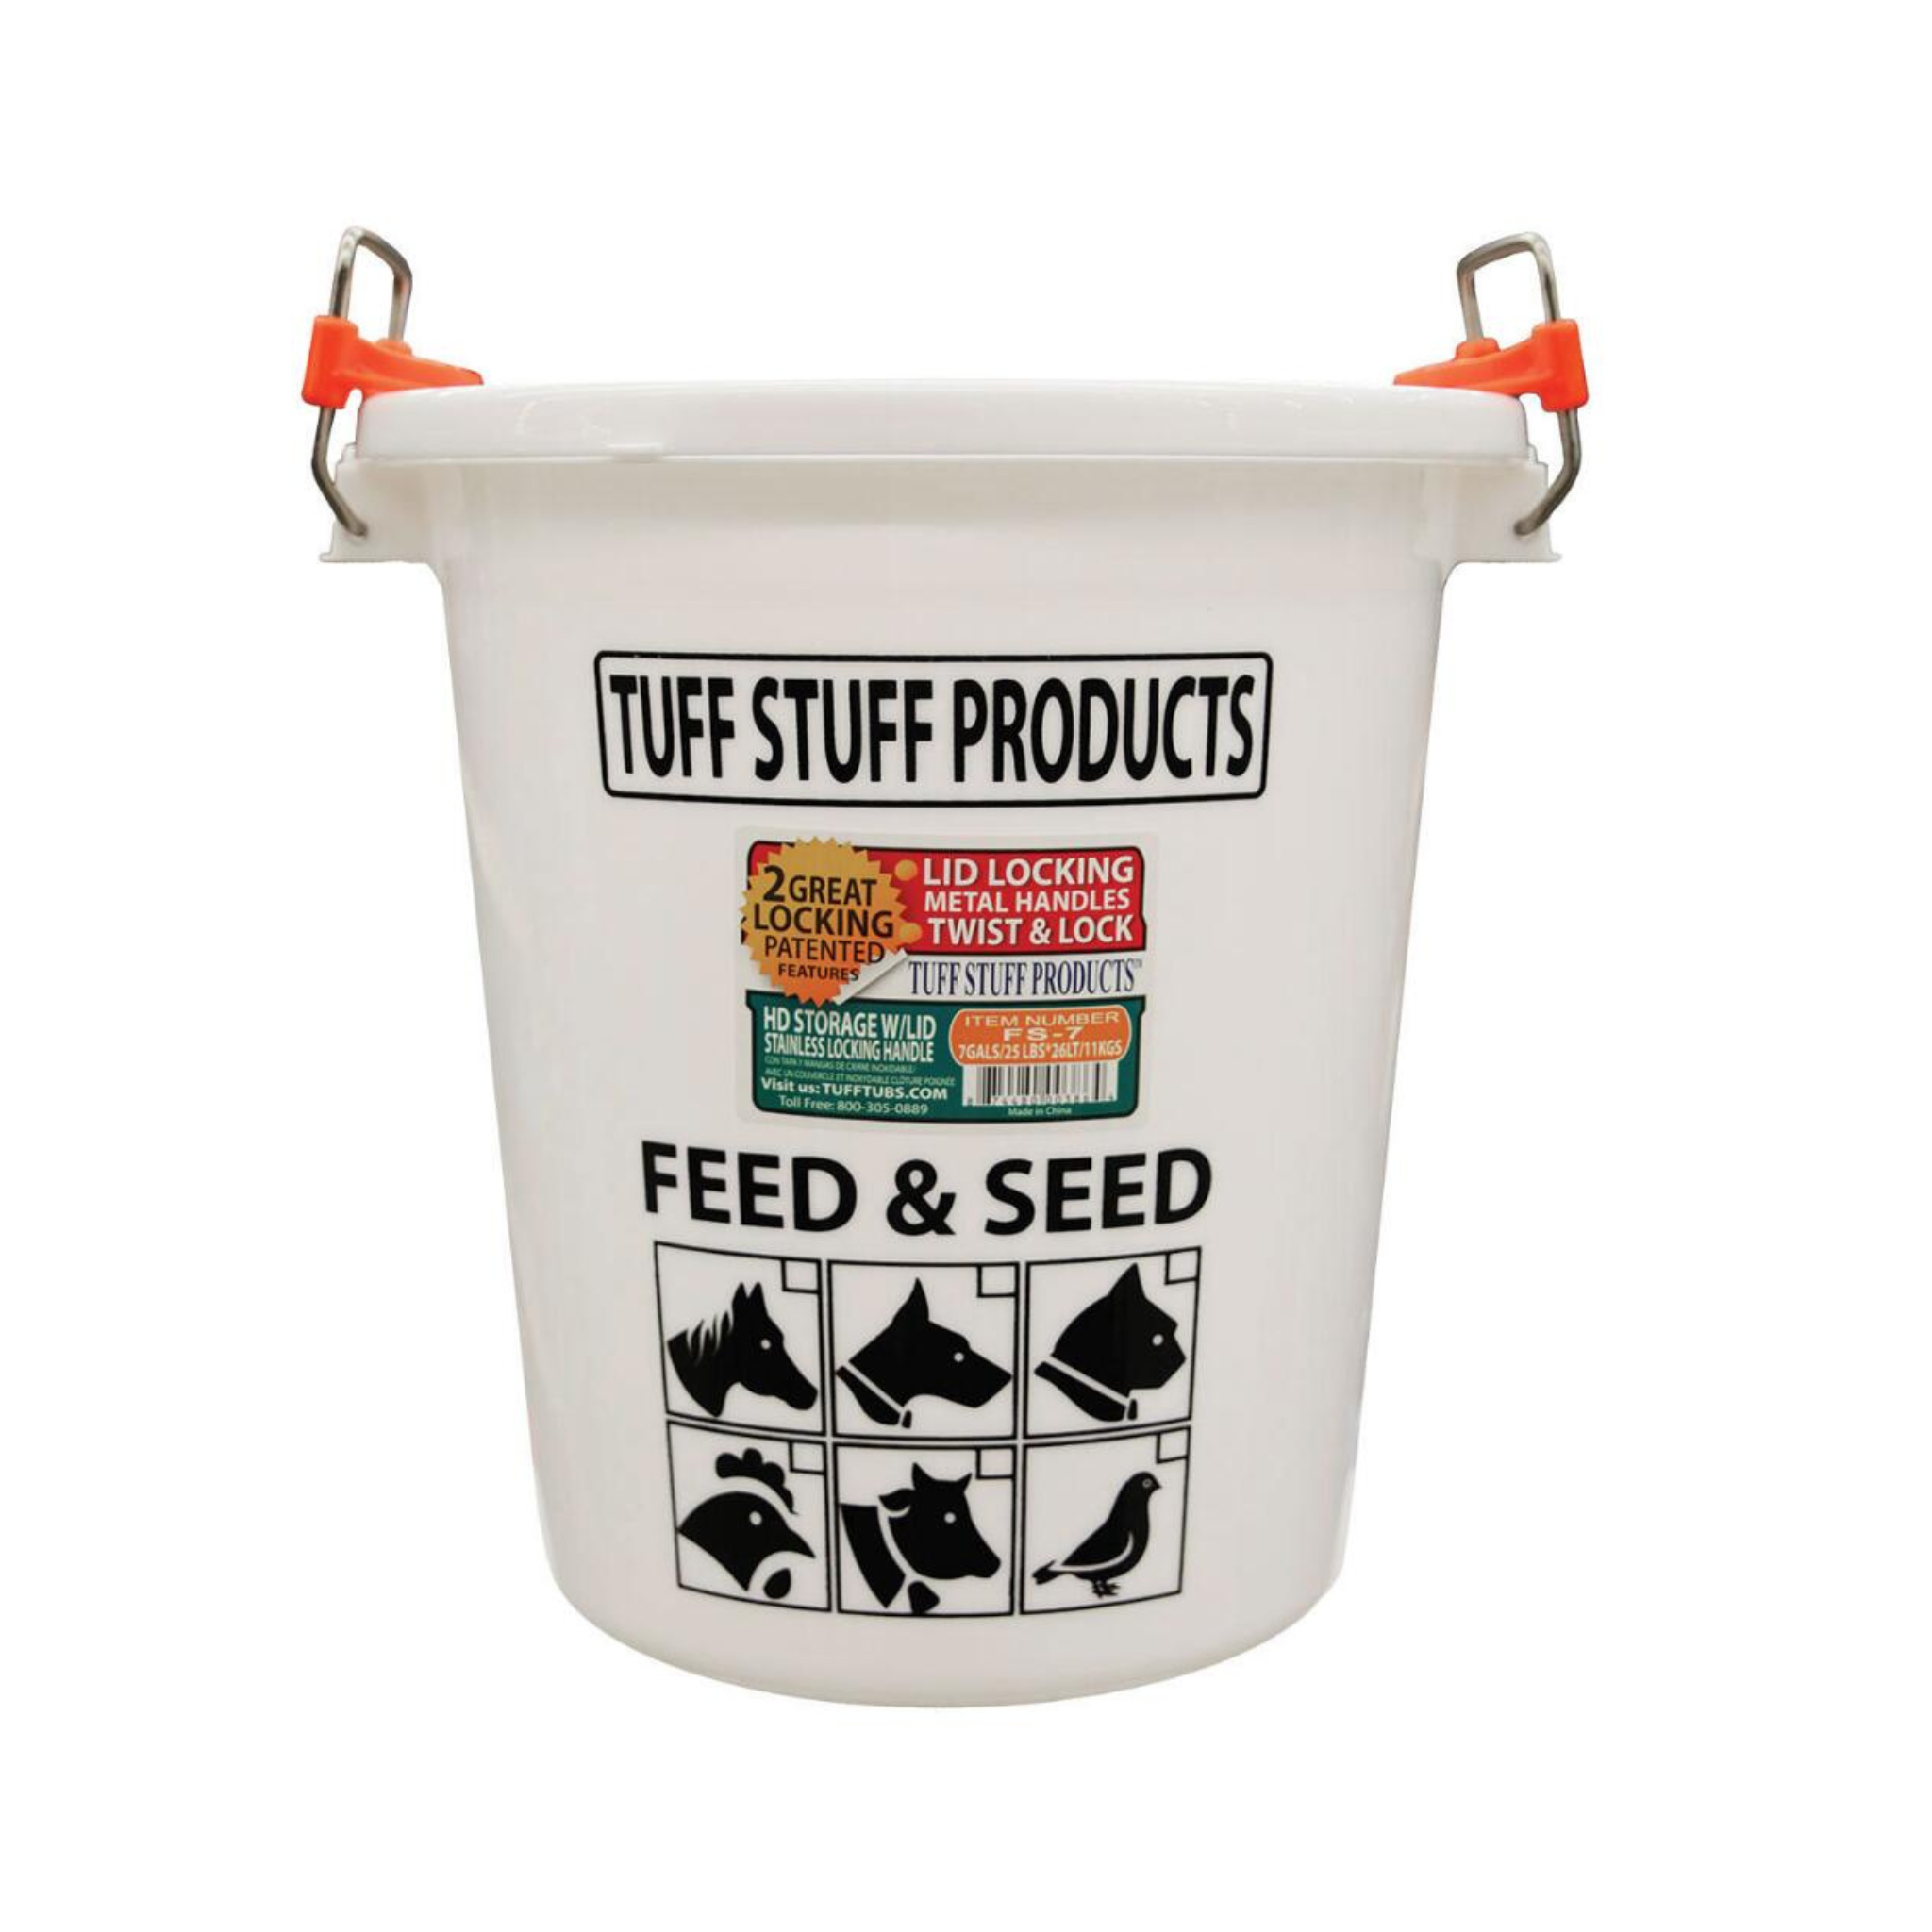 Tuff Stuff Feed & Seed Storage Bin with Locking Lid